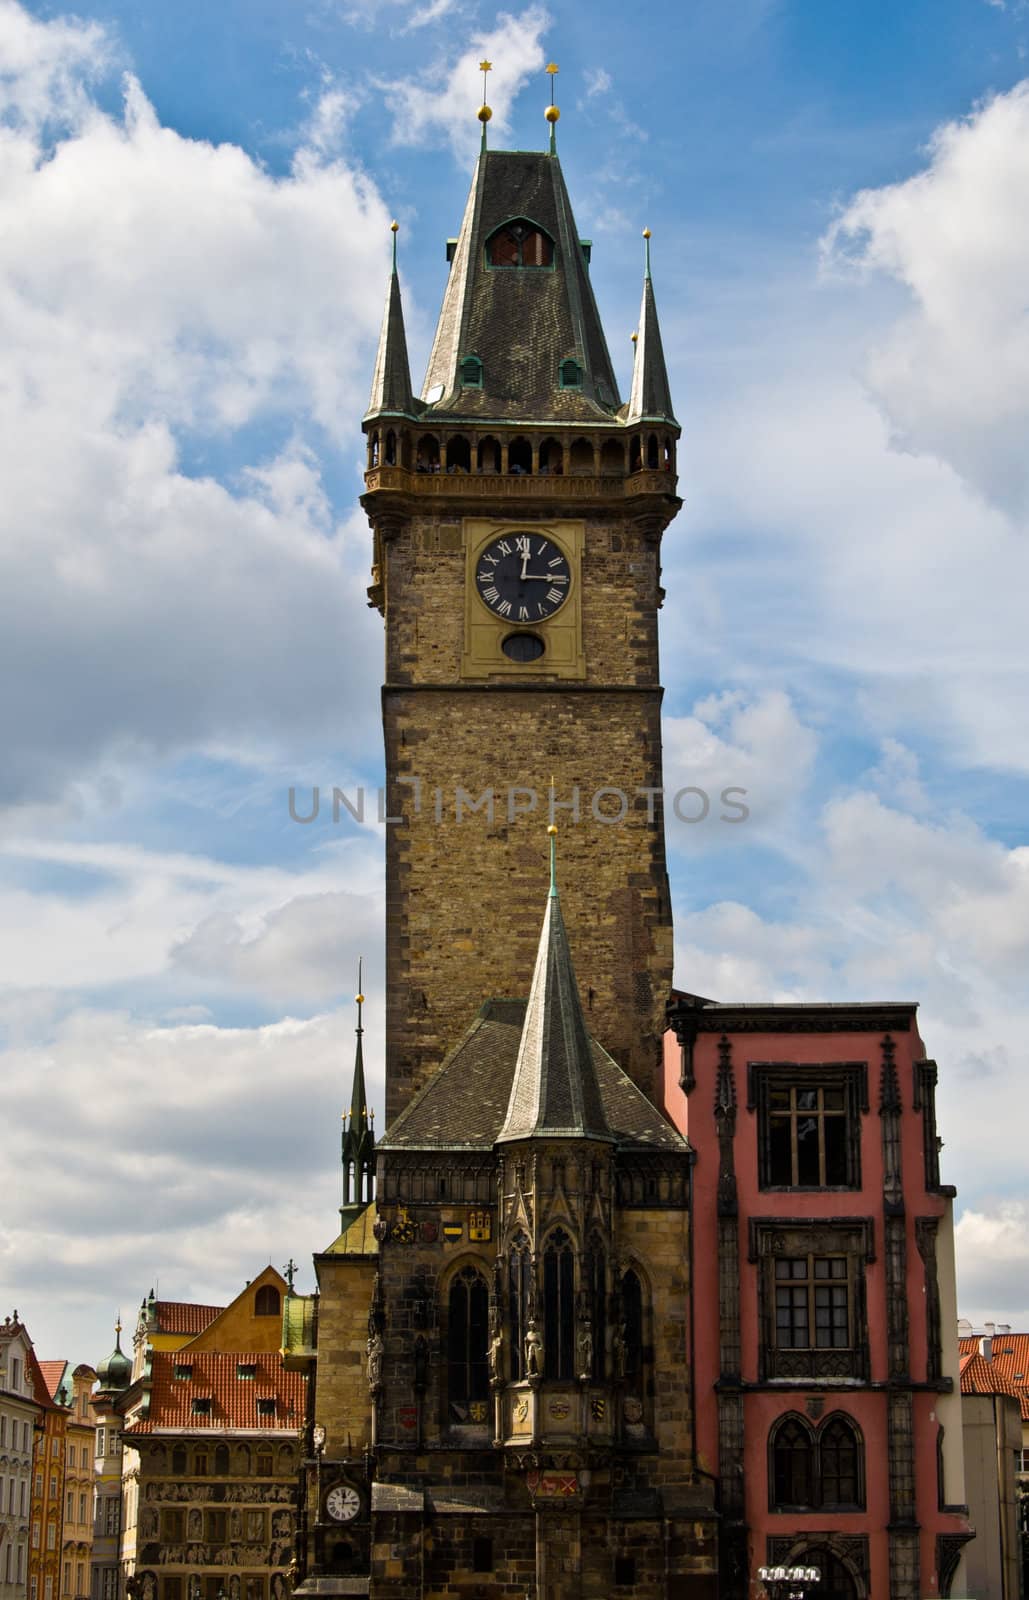 Townhall of Prague by Jule_Berlin